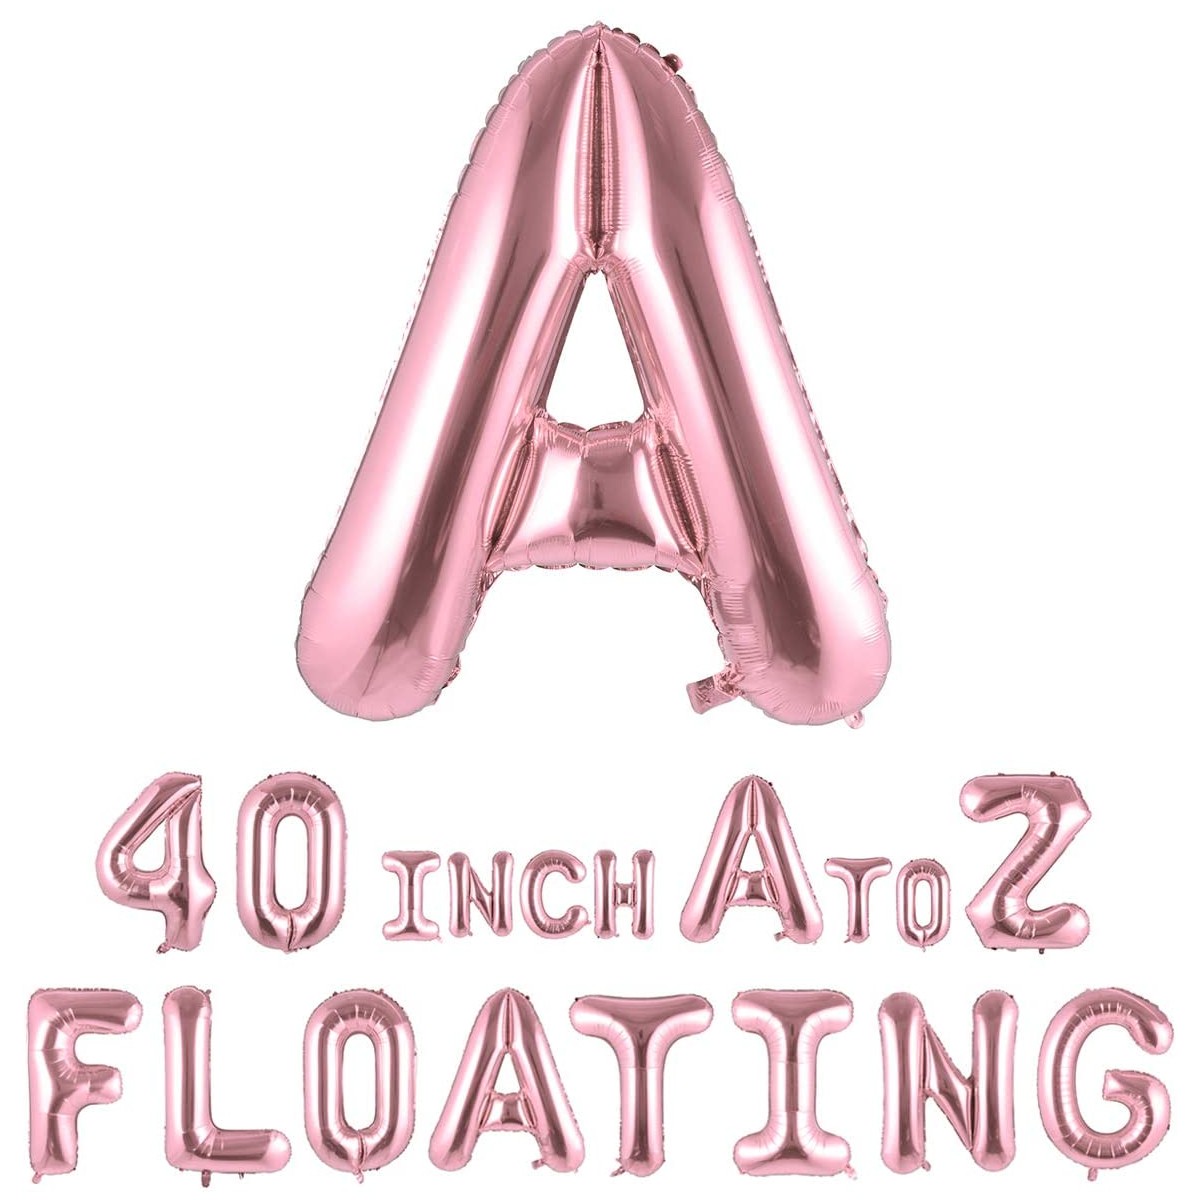 Palloncino lettera maxi oro / rosa da 81 cm, in alluminio